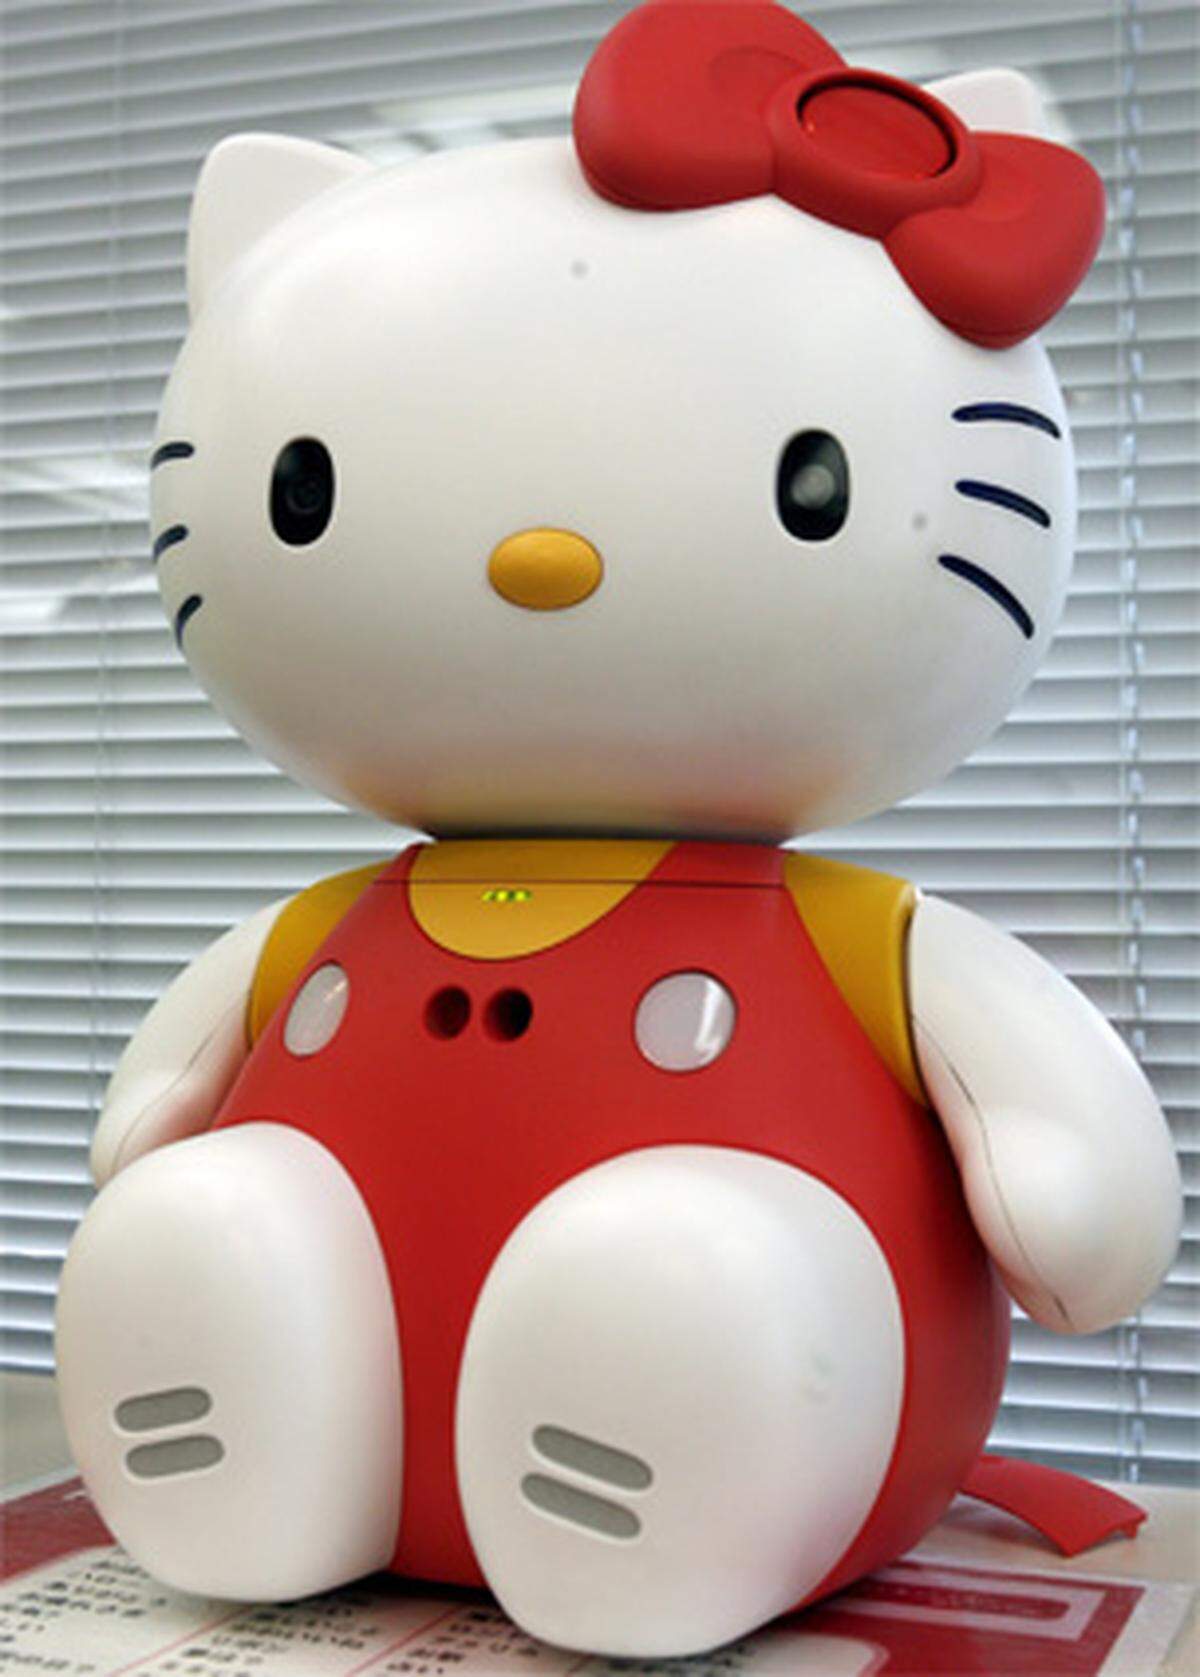 Der Hello Kitty Roboter soll Kinder bei Laune halten, während ihre Eltern tagtäglich Arbeiten gehen. Das müssen sie auch, um sich das Robokitty leisten zu können: 6.299 US-Dollar werden dafür verlangt. Je nach Situation passt sich das Gerät seine Reaktionen an. Allerdings ist es nur in japanischer Sprache erhältlich.